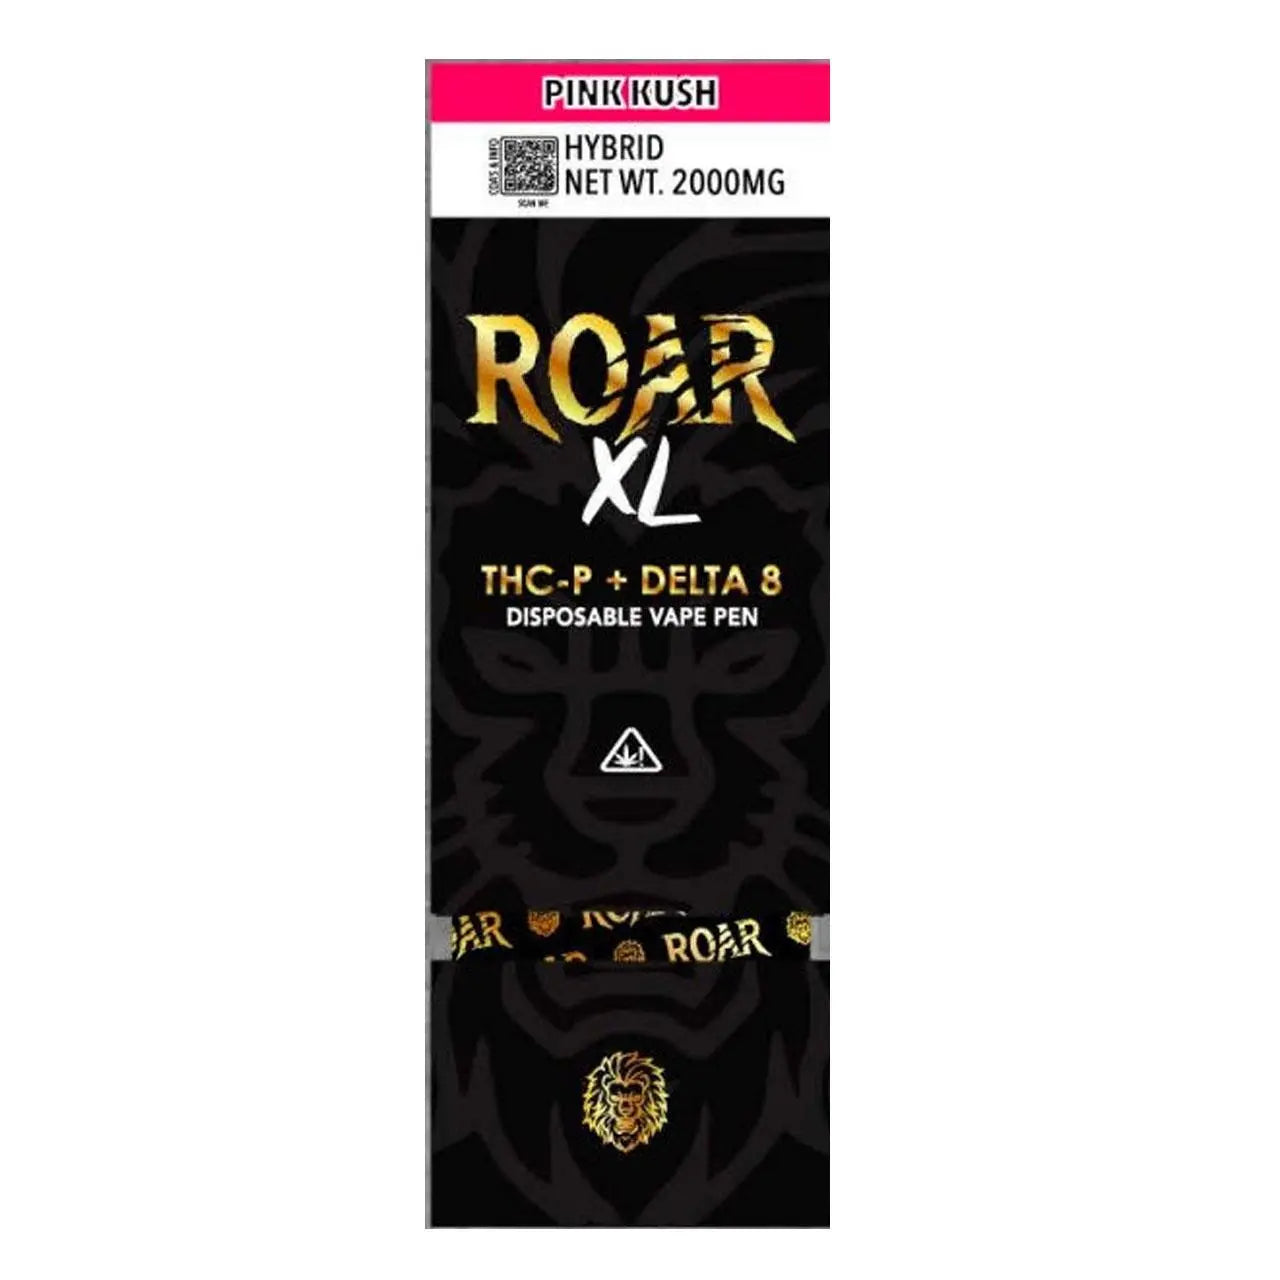 Roar XL 2g Disposable Vape Wholesale – 1 Box / 5 pcs